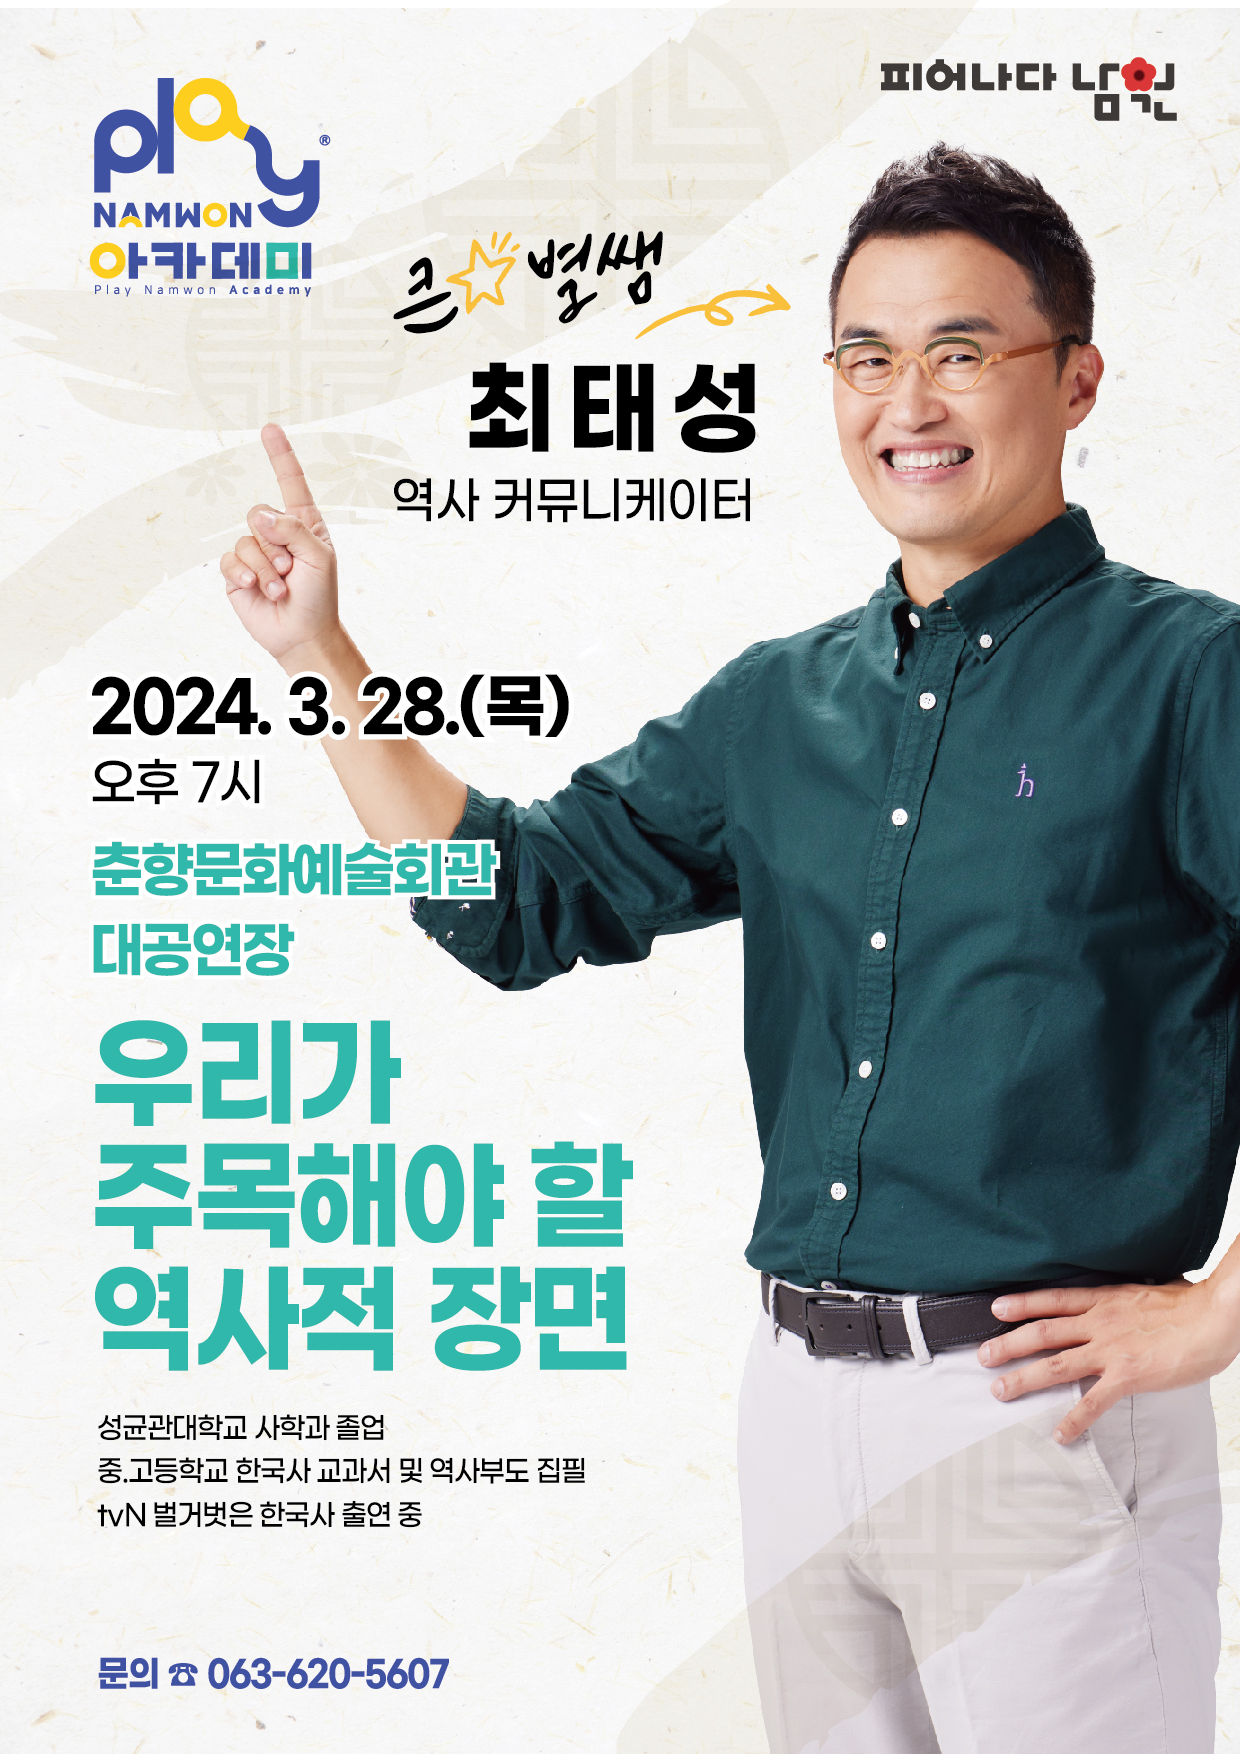 남원시 교육체육과_3월 Play남원 아카데미 홍보안